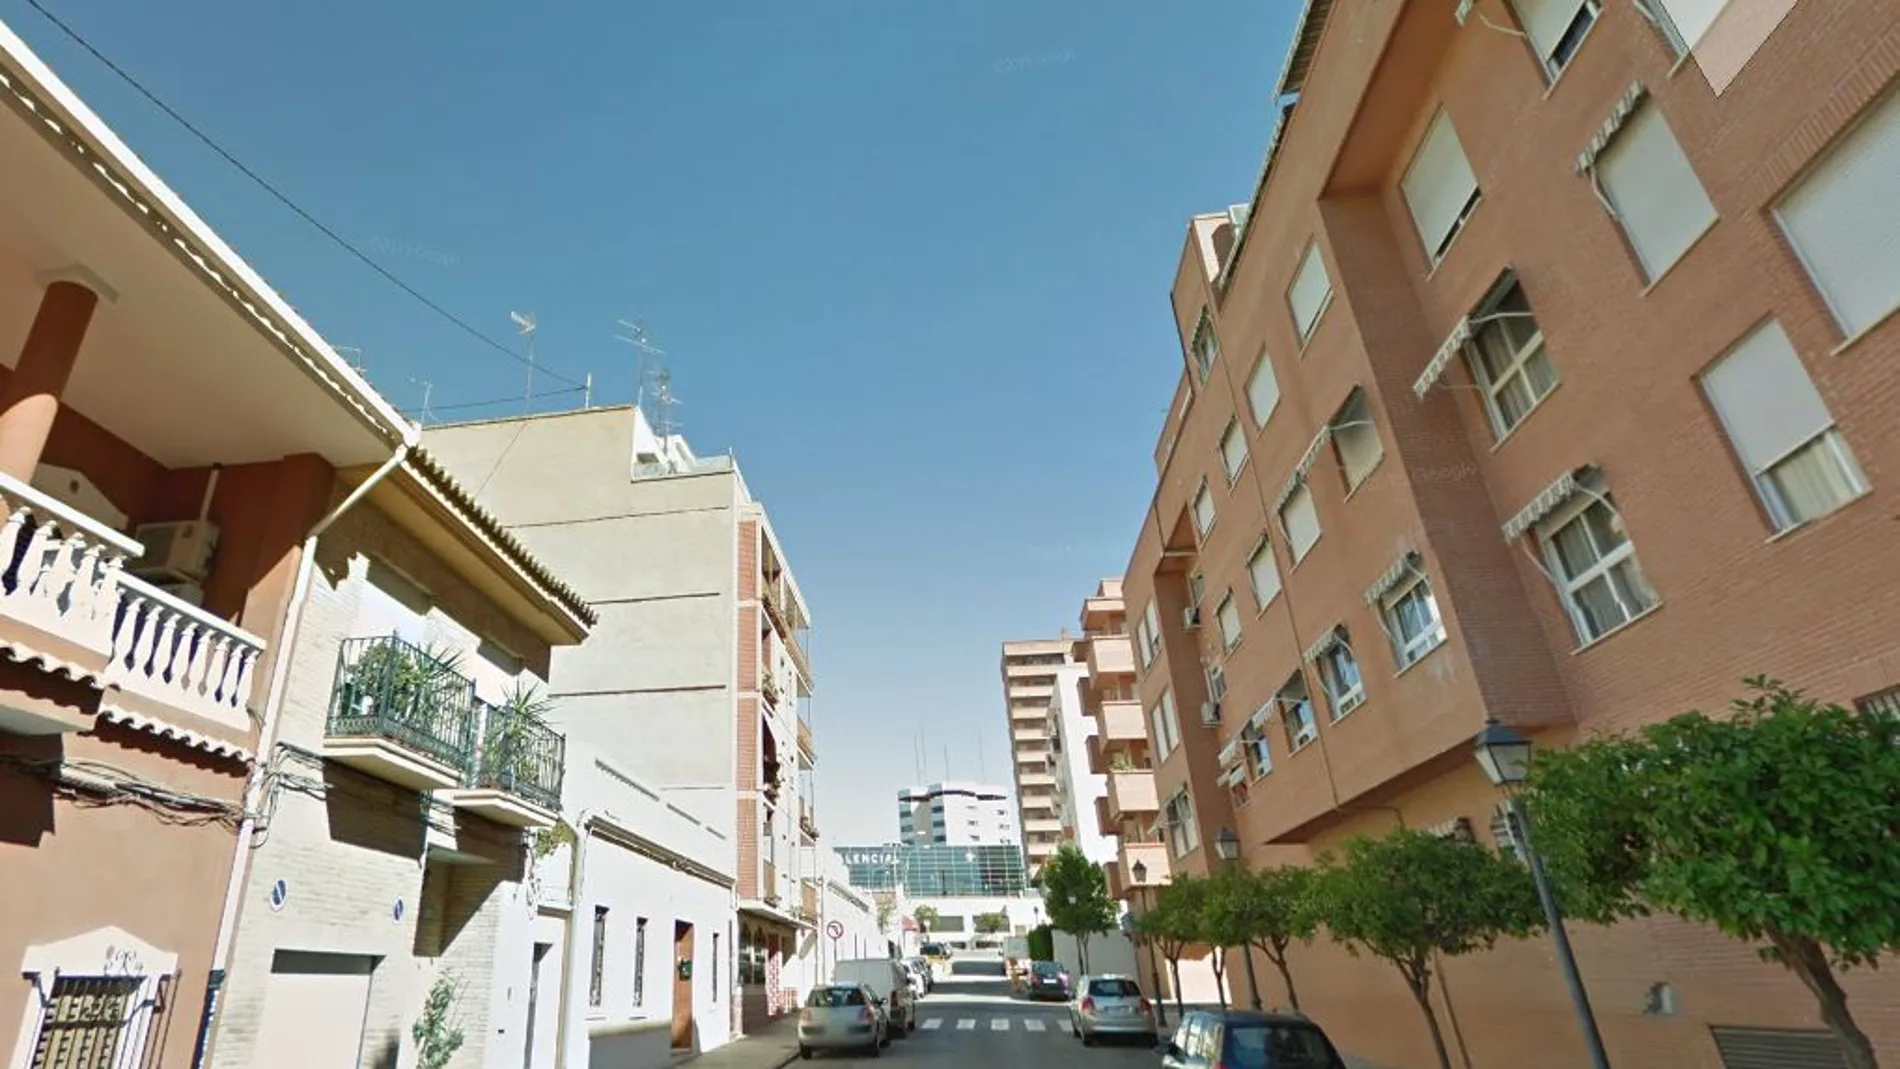 Los hechos se produjeron en la calle Ave María en el barrio valenciano de Benimàmet